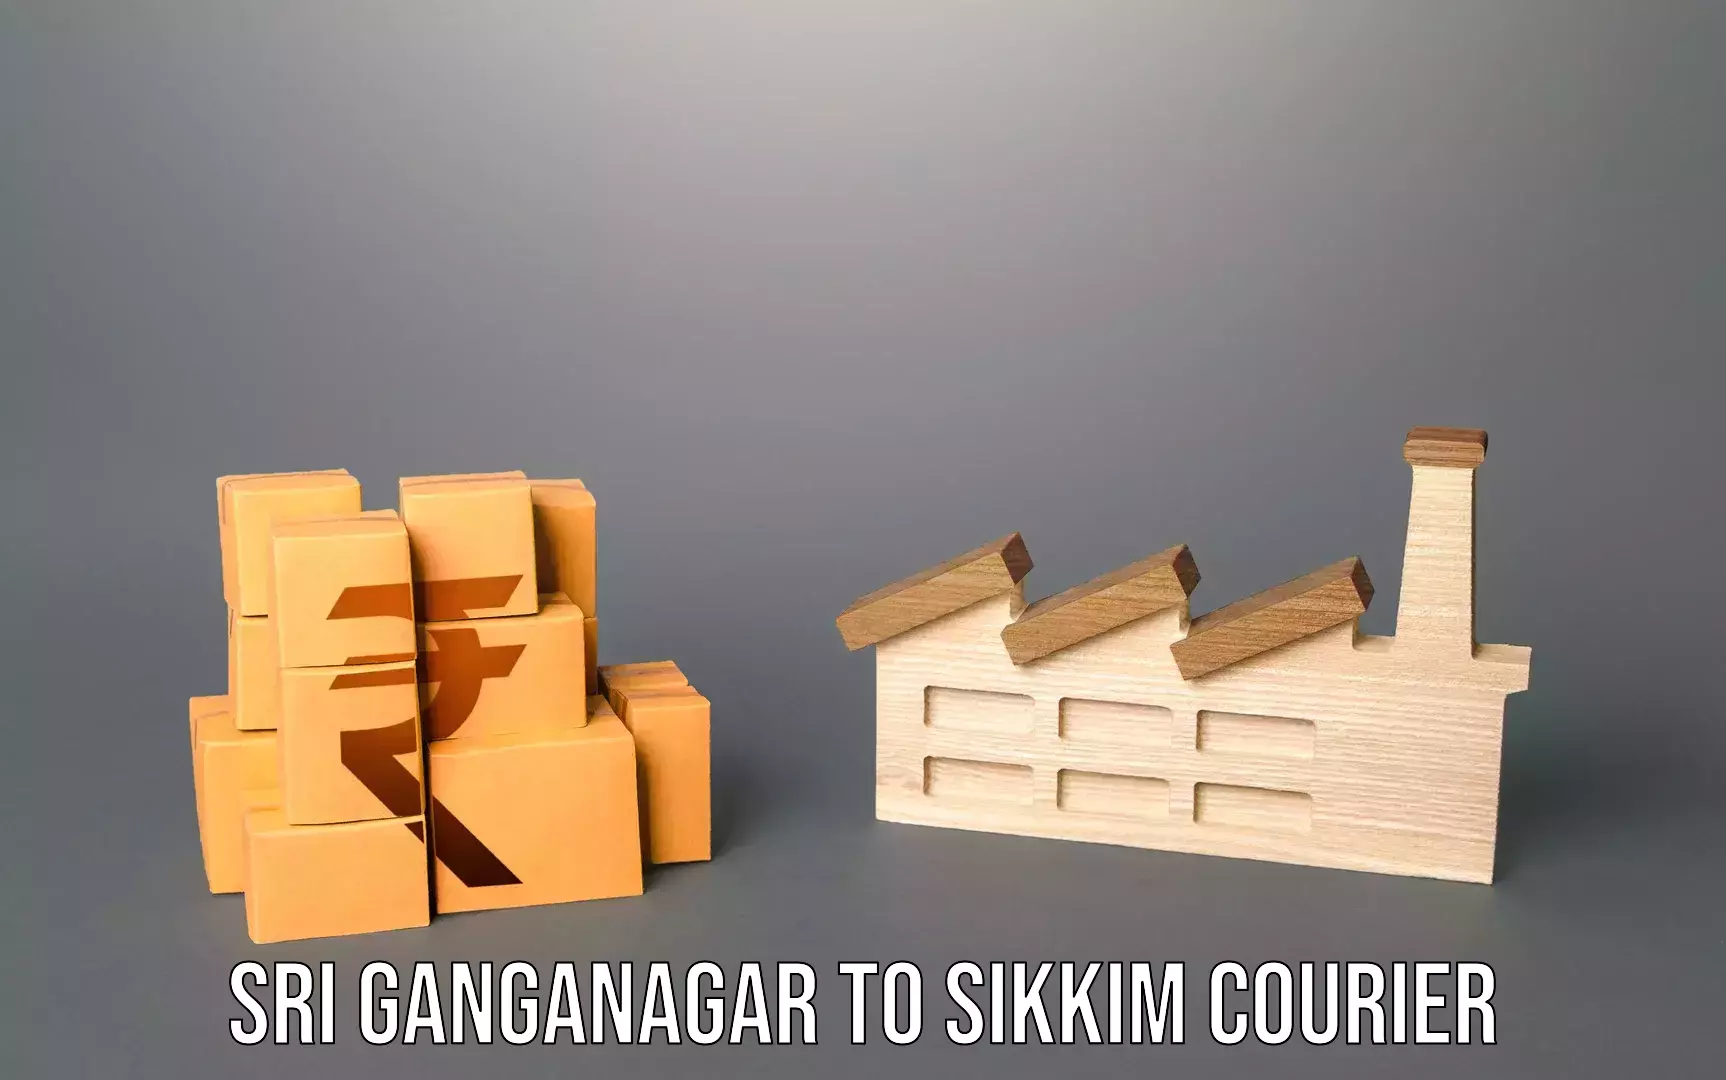 Luggage transit service Sri Ganganagar to Sikkim